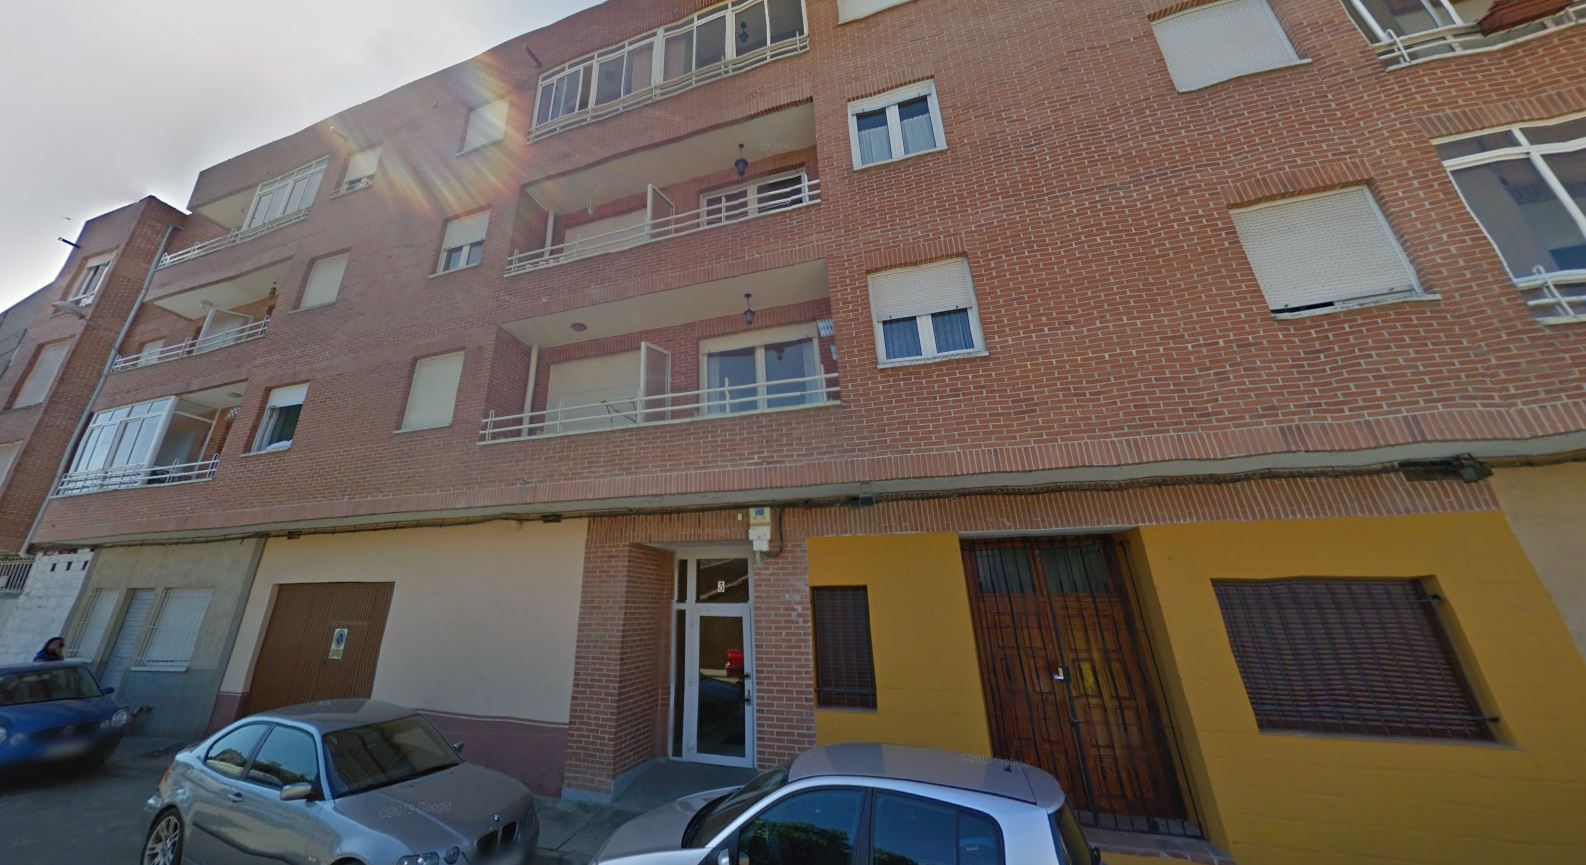 Housing letter A on the 2nd floor, C/ Carcaba, in Valencia de Don Juan (León). FR 13682 RP Valencia de Don Juan